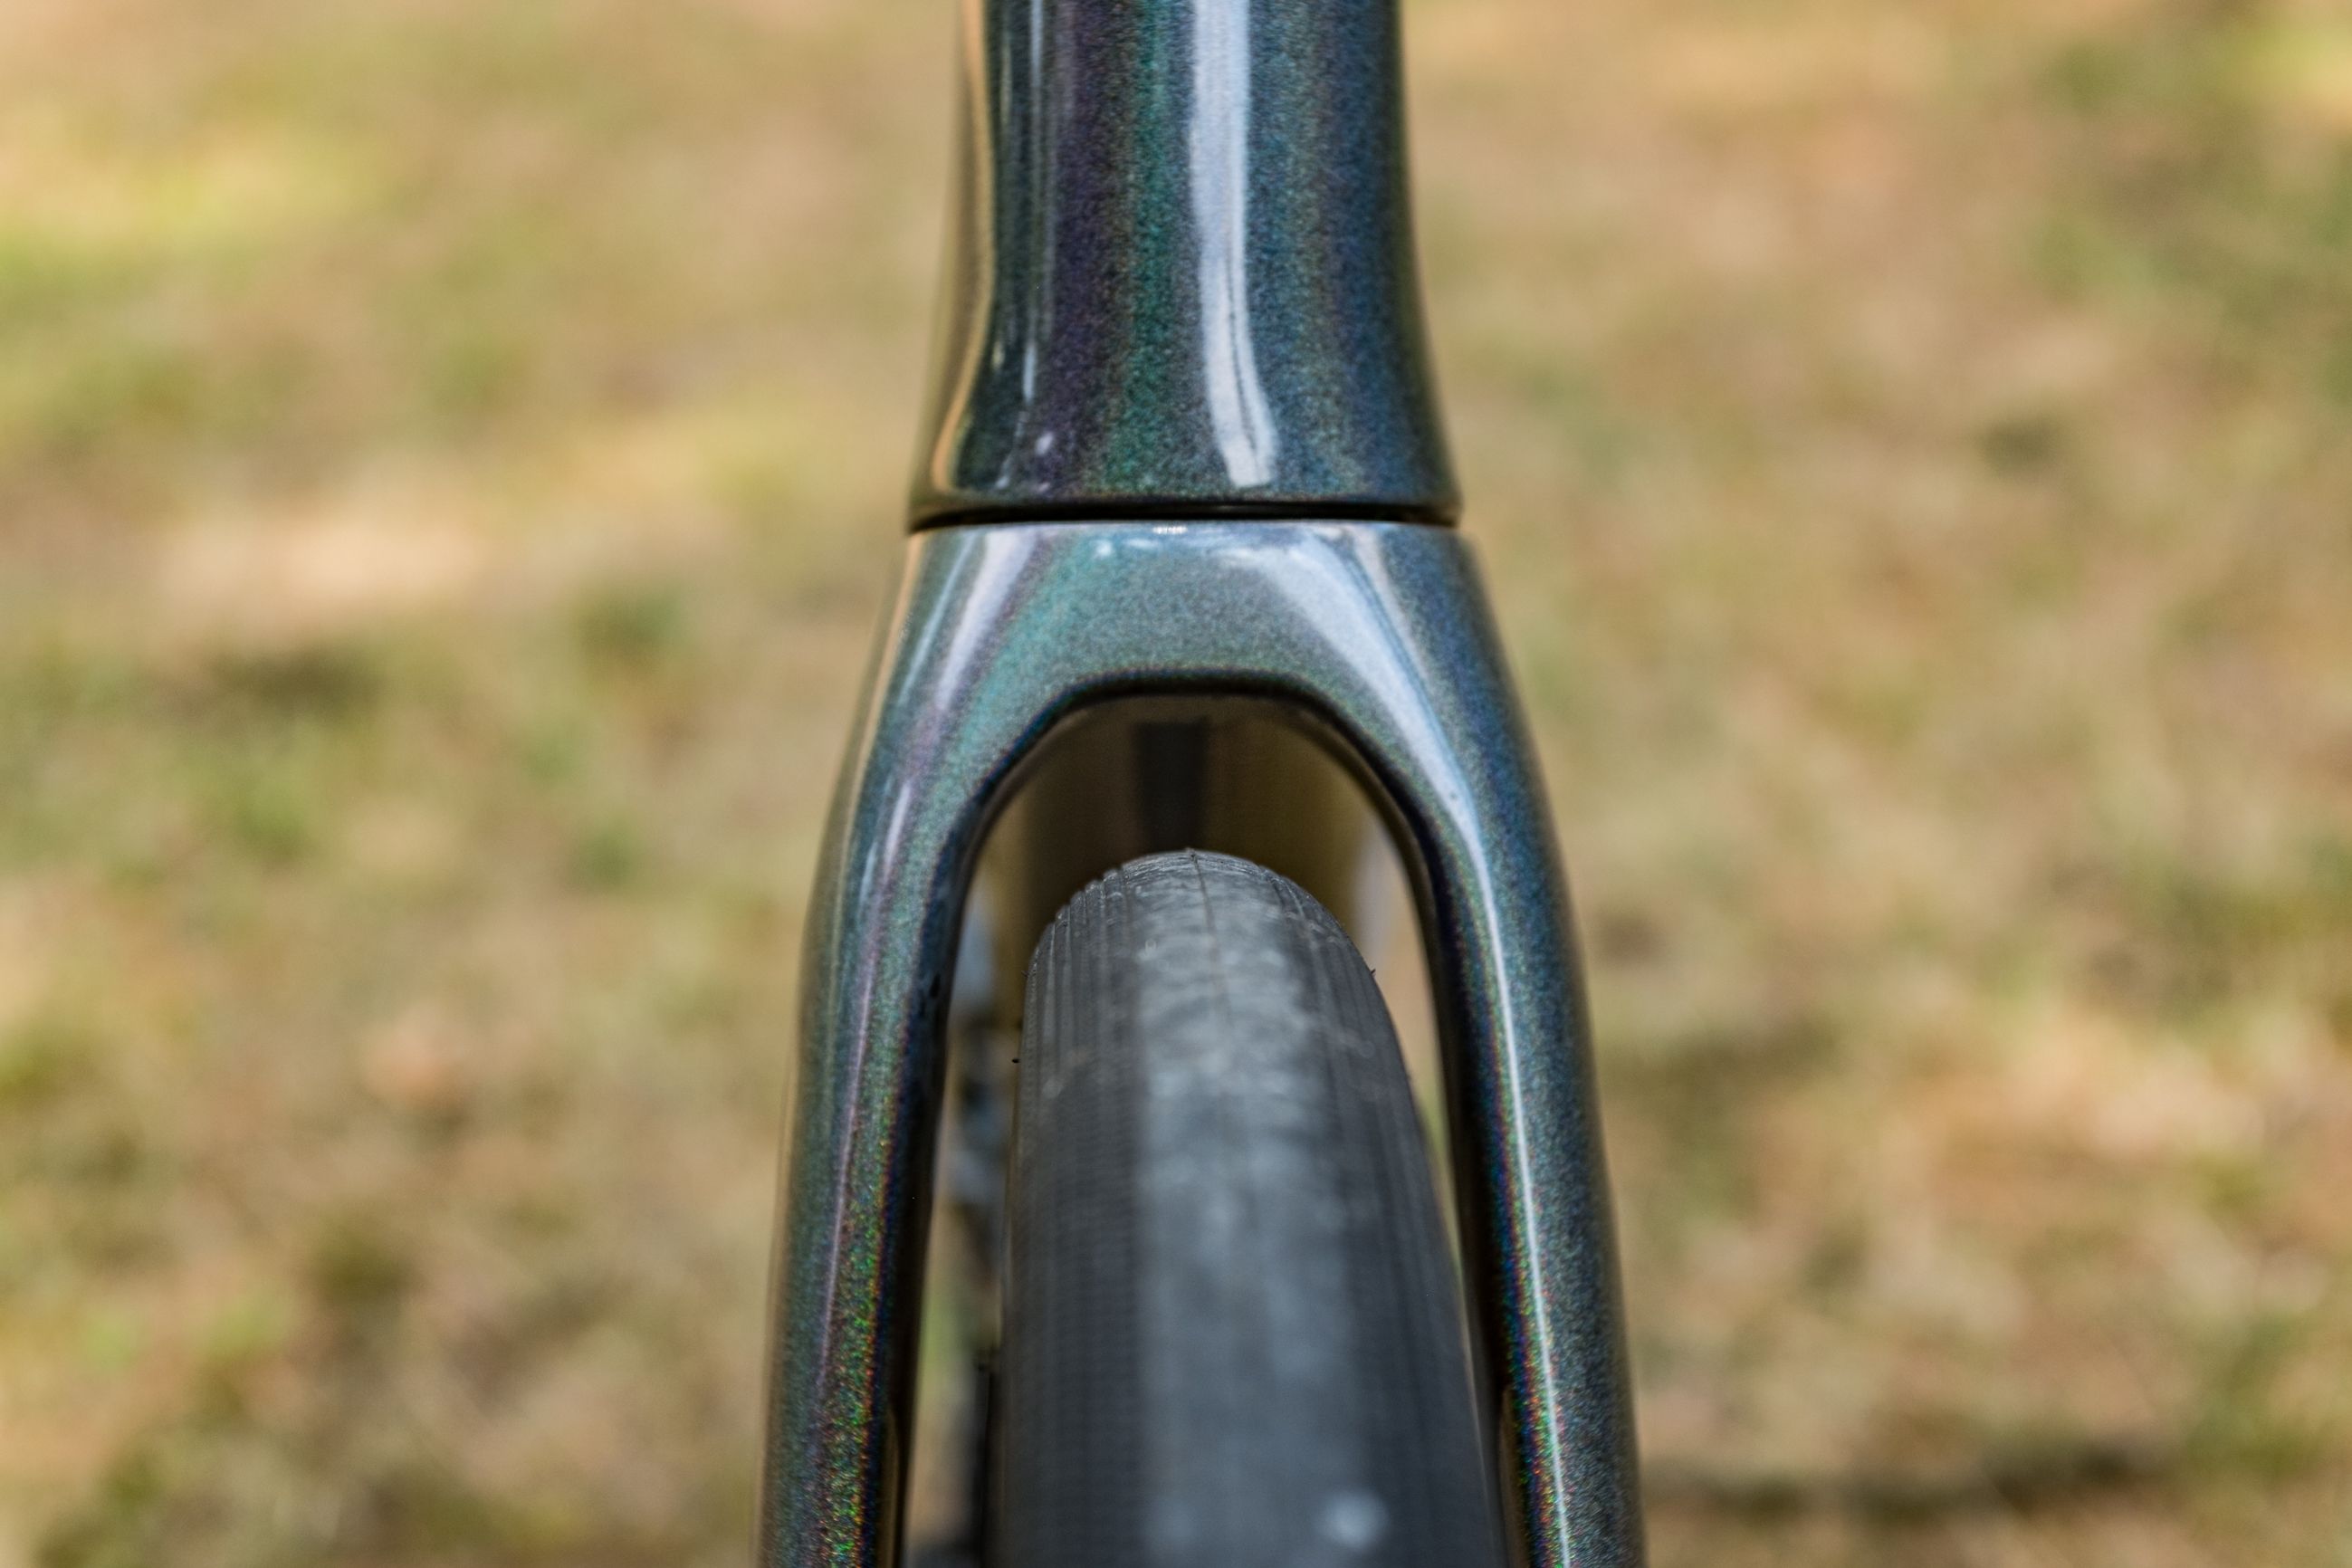 Bicycle fork, Bicycle frame, Bicycle tire, Tire, Rim, Bicycle part, Bicycle wheel, Metal, Steel, 